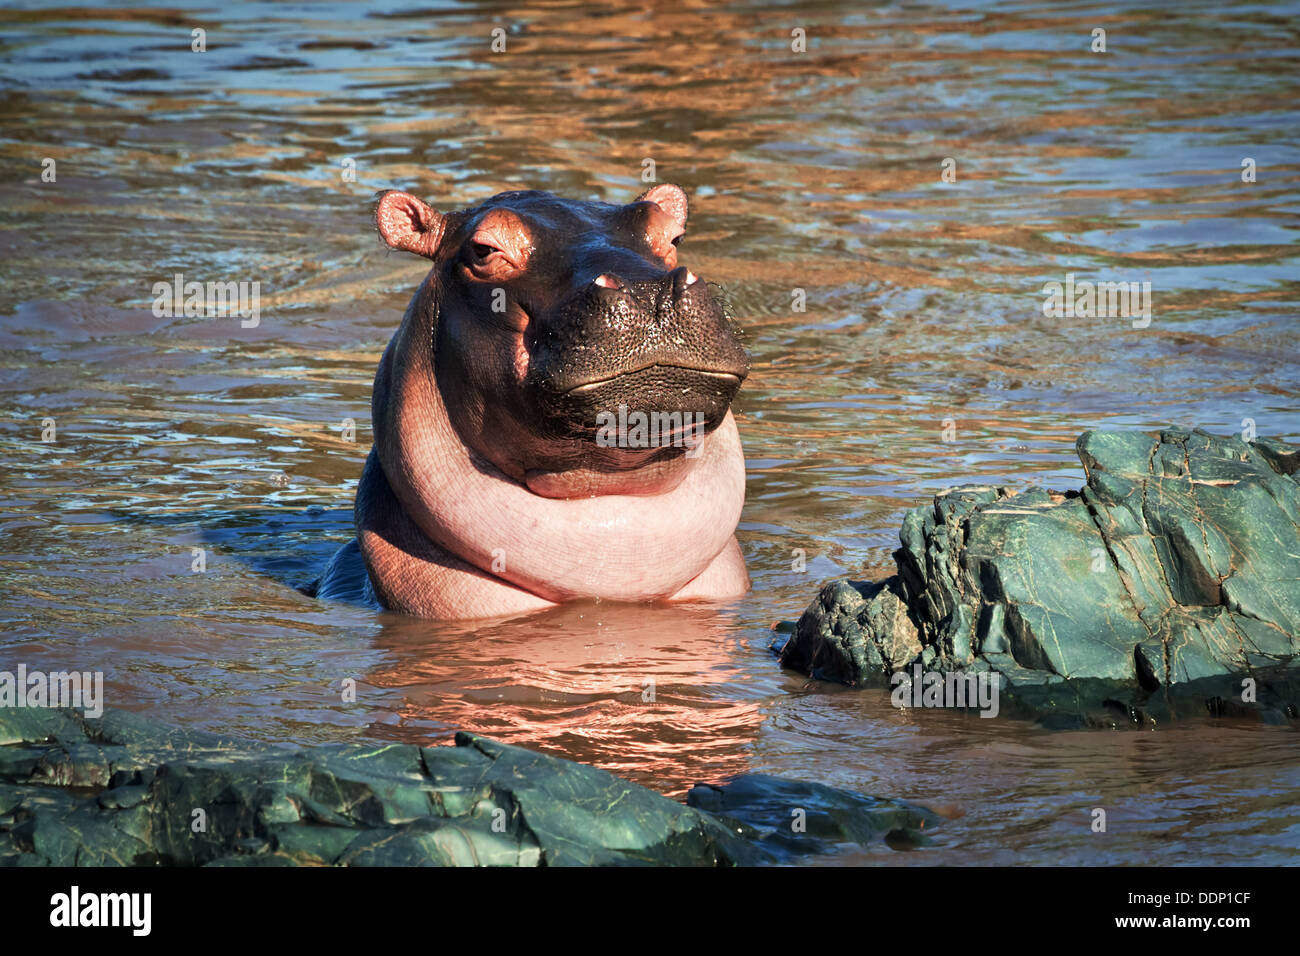 L'hippopotame, hippopotame dans river portrait. The Serengeti National Park, Tanzania, Africa Banque D'Images